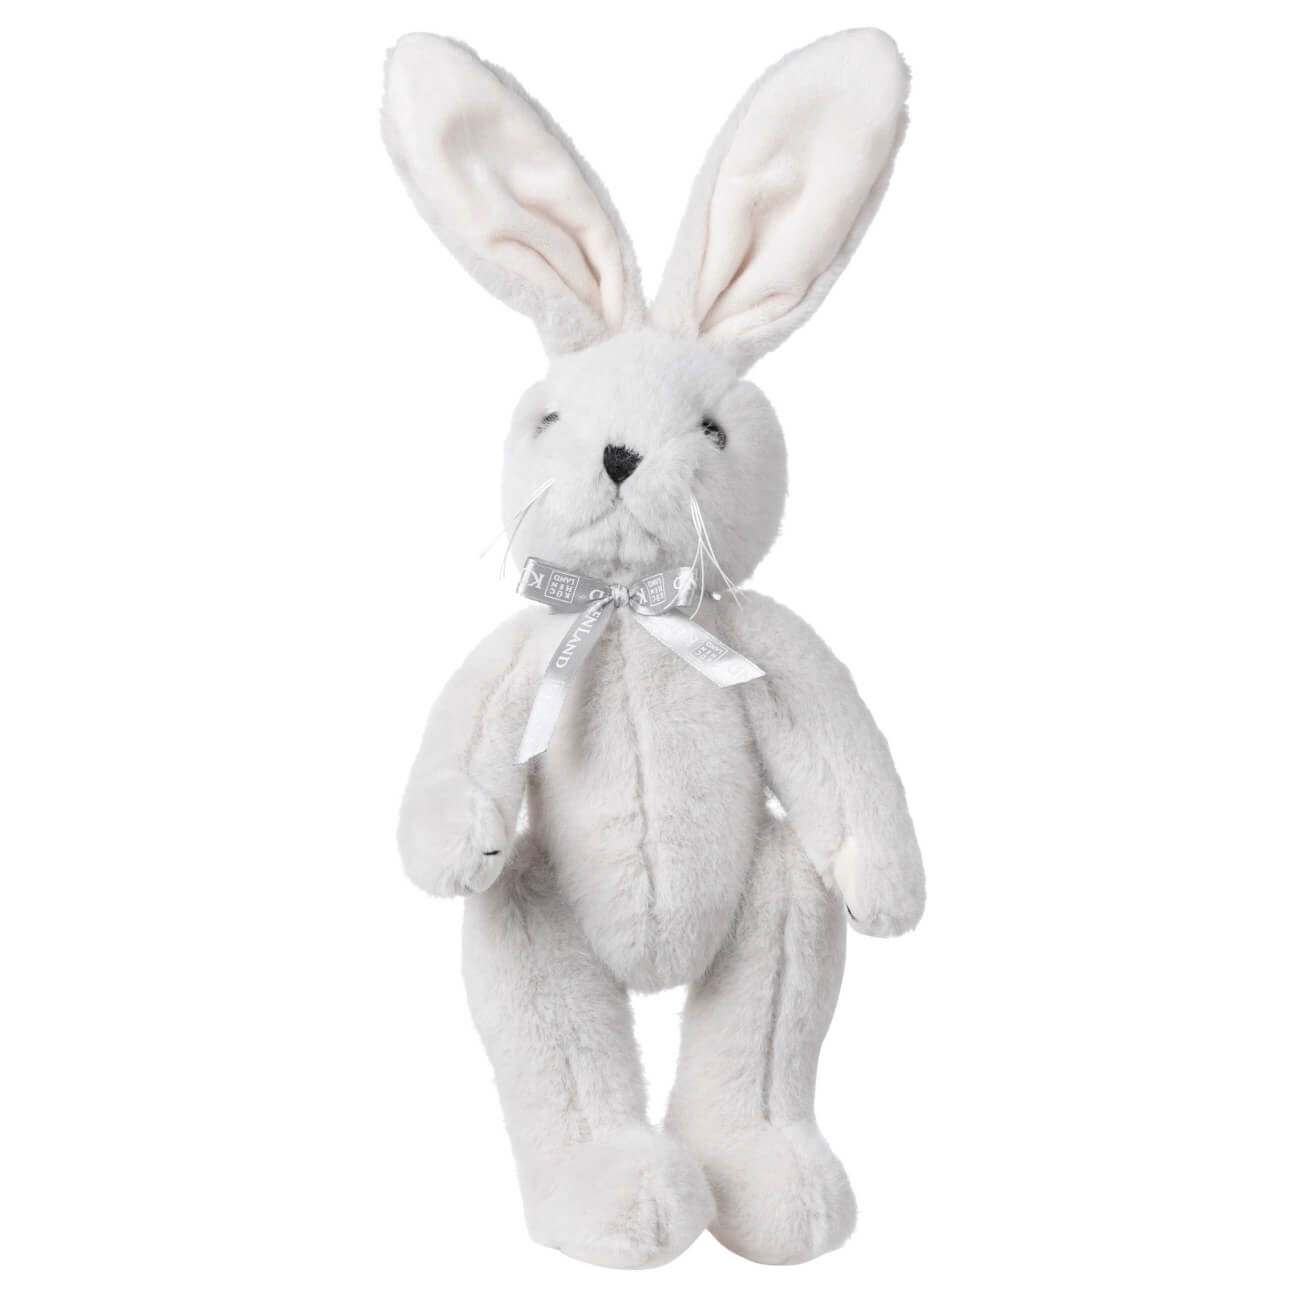 Игрушка, 30 см, мягкая, с подвижными лапами, полиэстер, светло-серая, Кролик, Rabbit toy изображение № 1